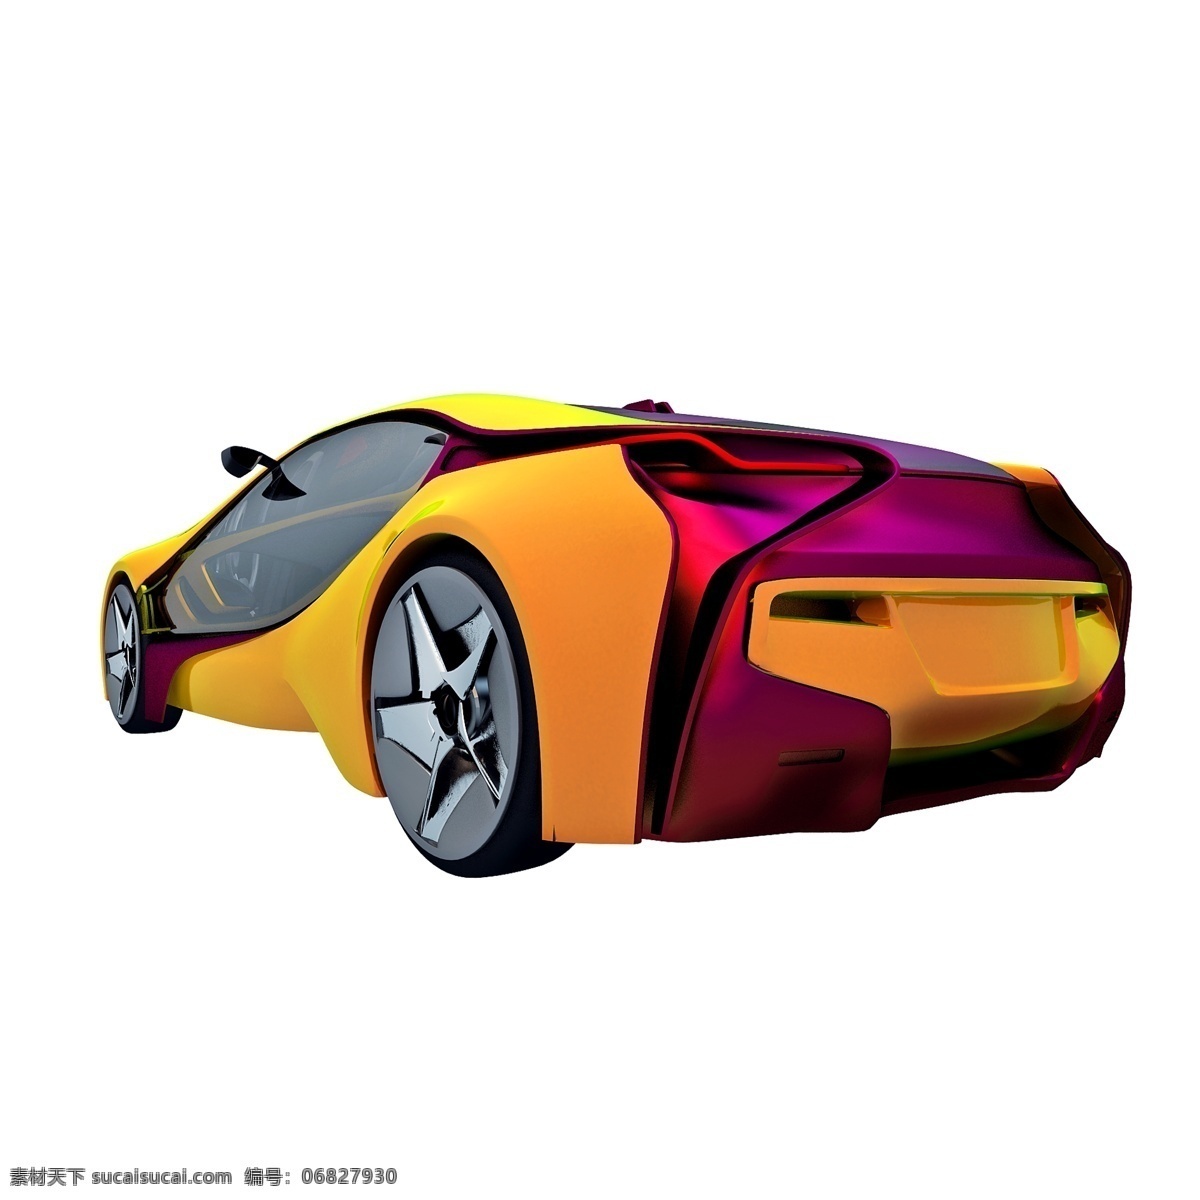 立体 炫 酷 跑车 图 轿车 豪车 渐变色 质感 精致 炫酷 科幻 png图 创意 套图 小车 汽车